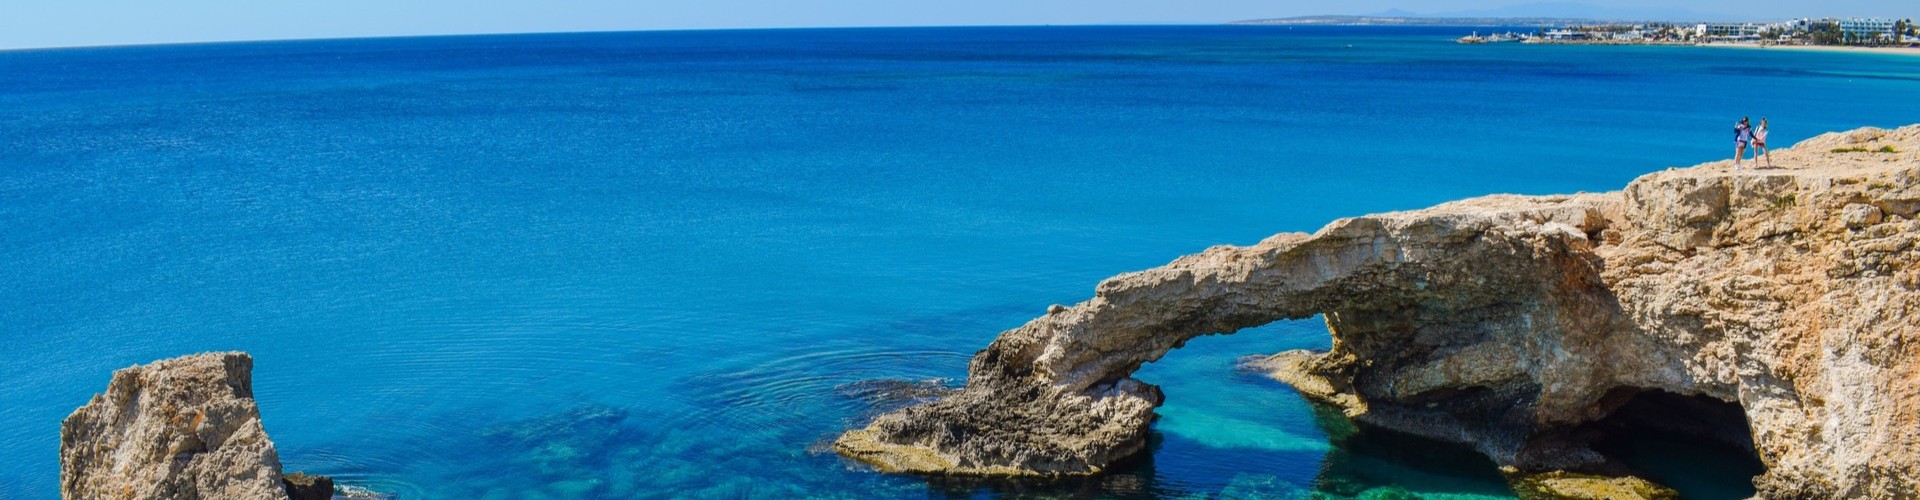 Imagen recurso del puerto de destino Niza para la ruta en ferry Golfo Aranci - Niza